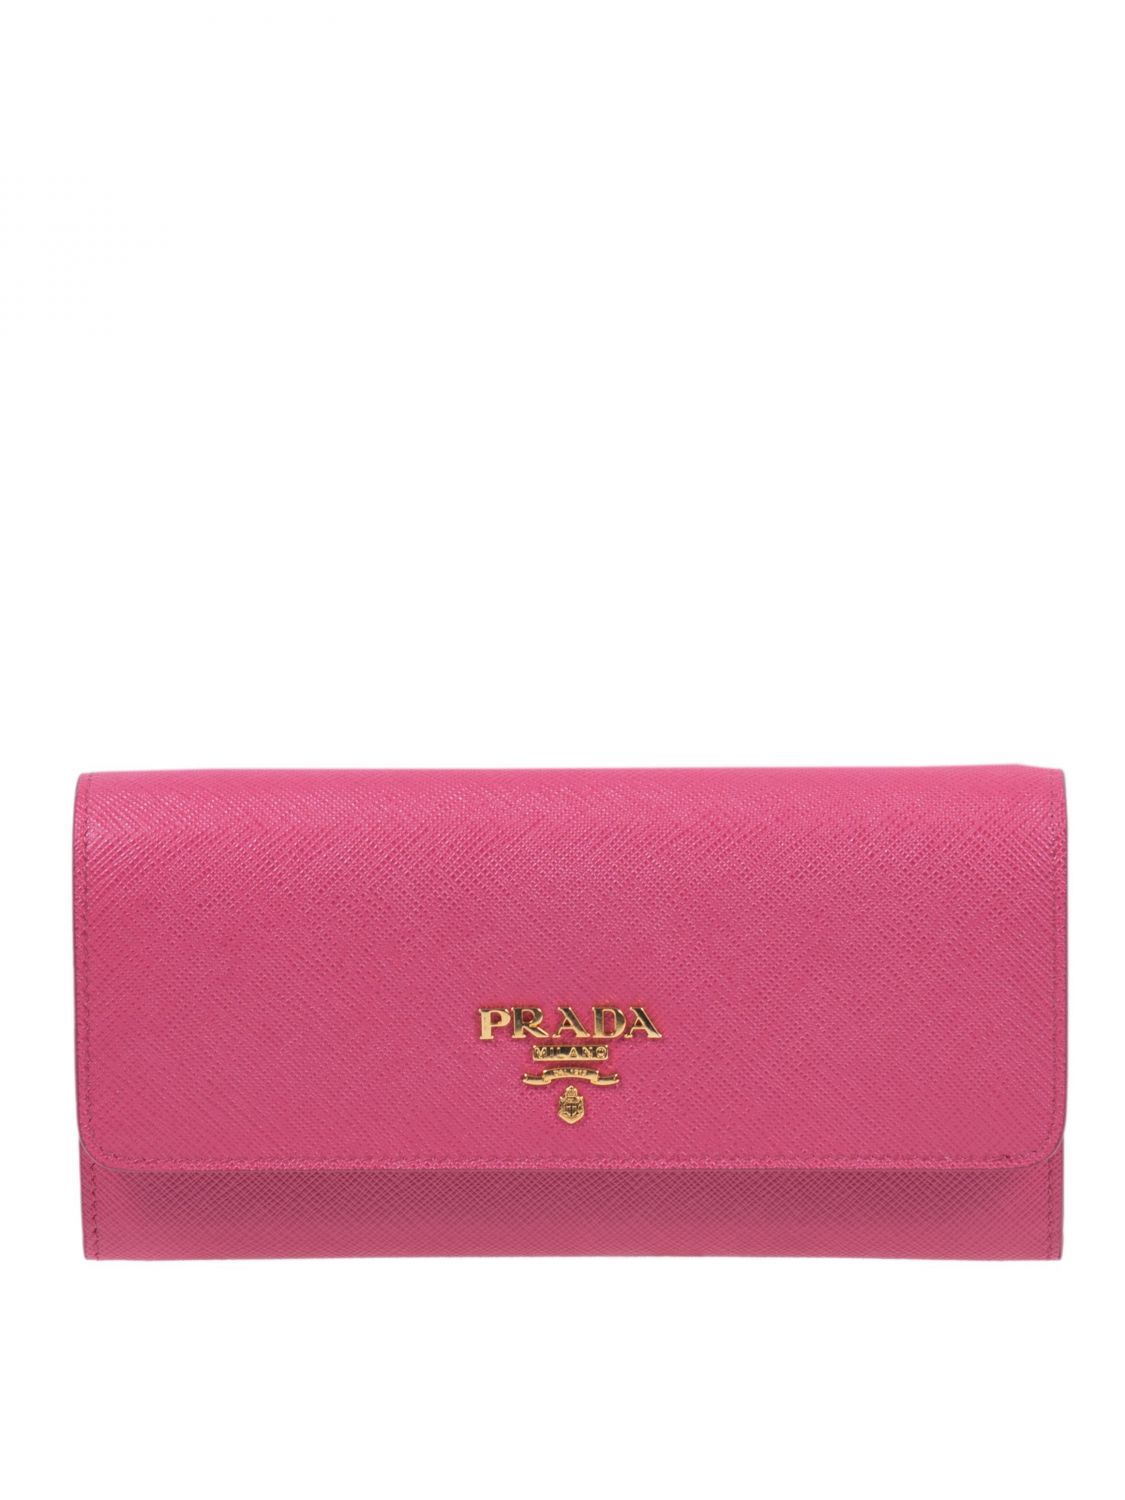 PRADA: mini bag for woman - Pink  Prada mini bag 1DH00 2QWA online at